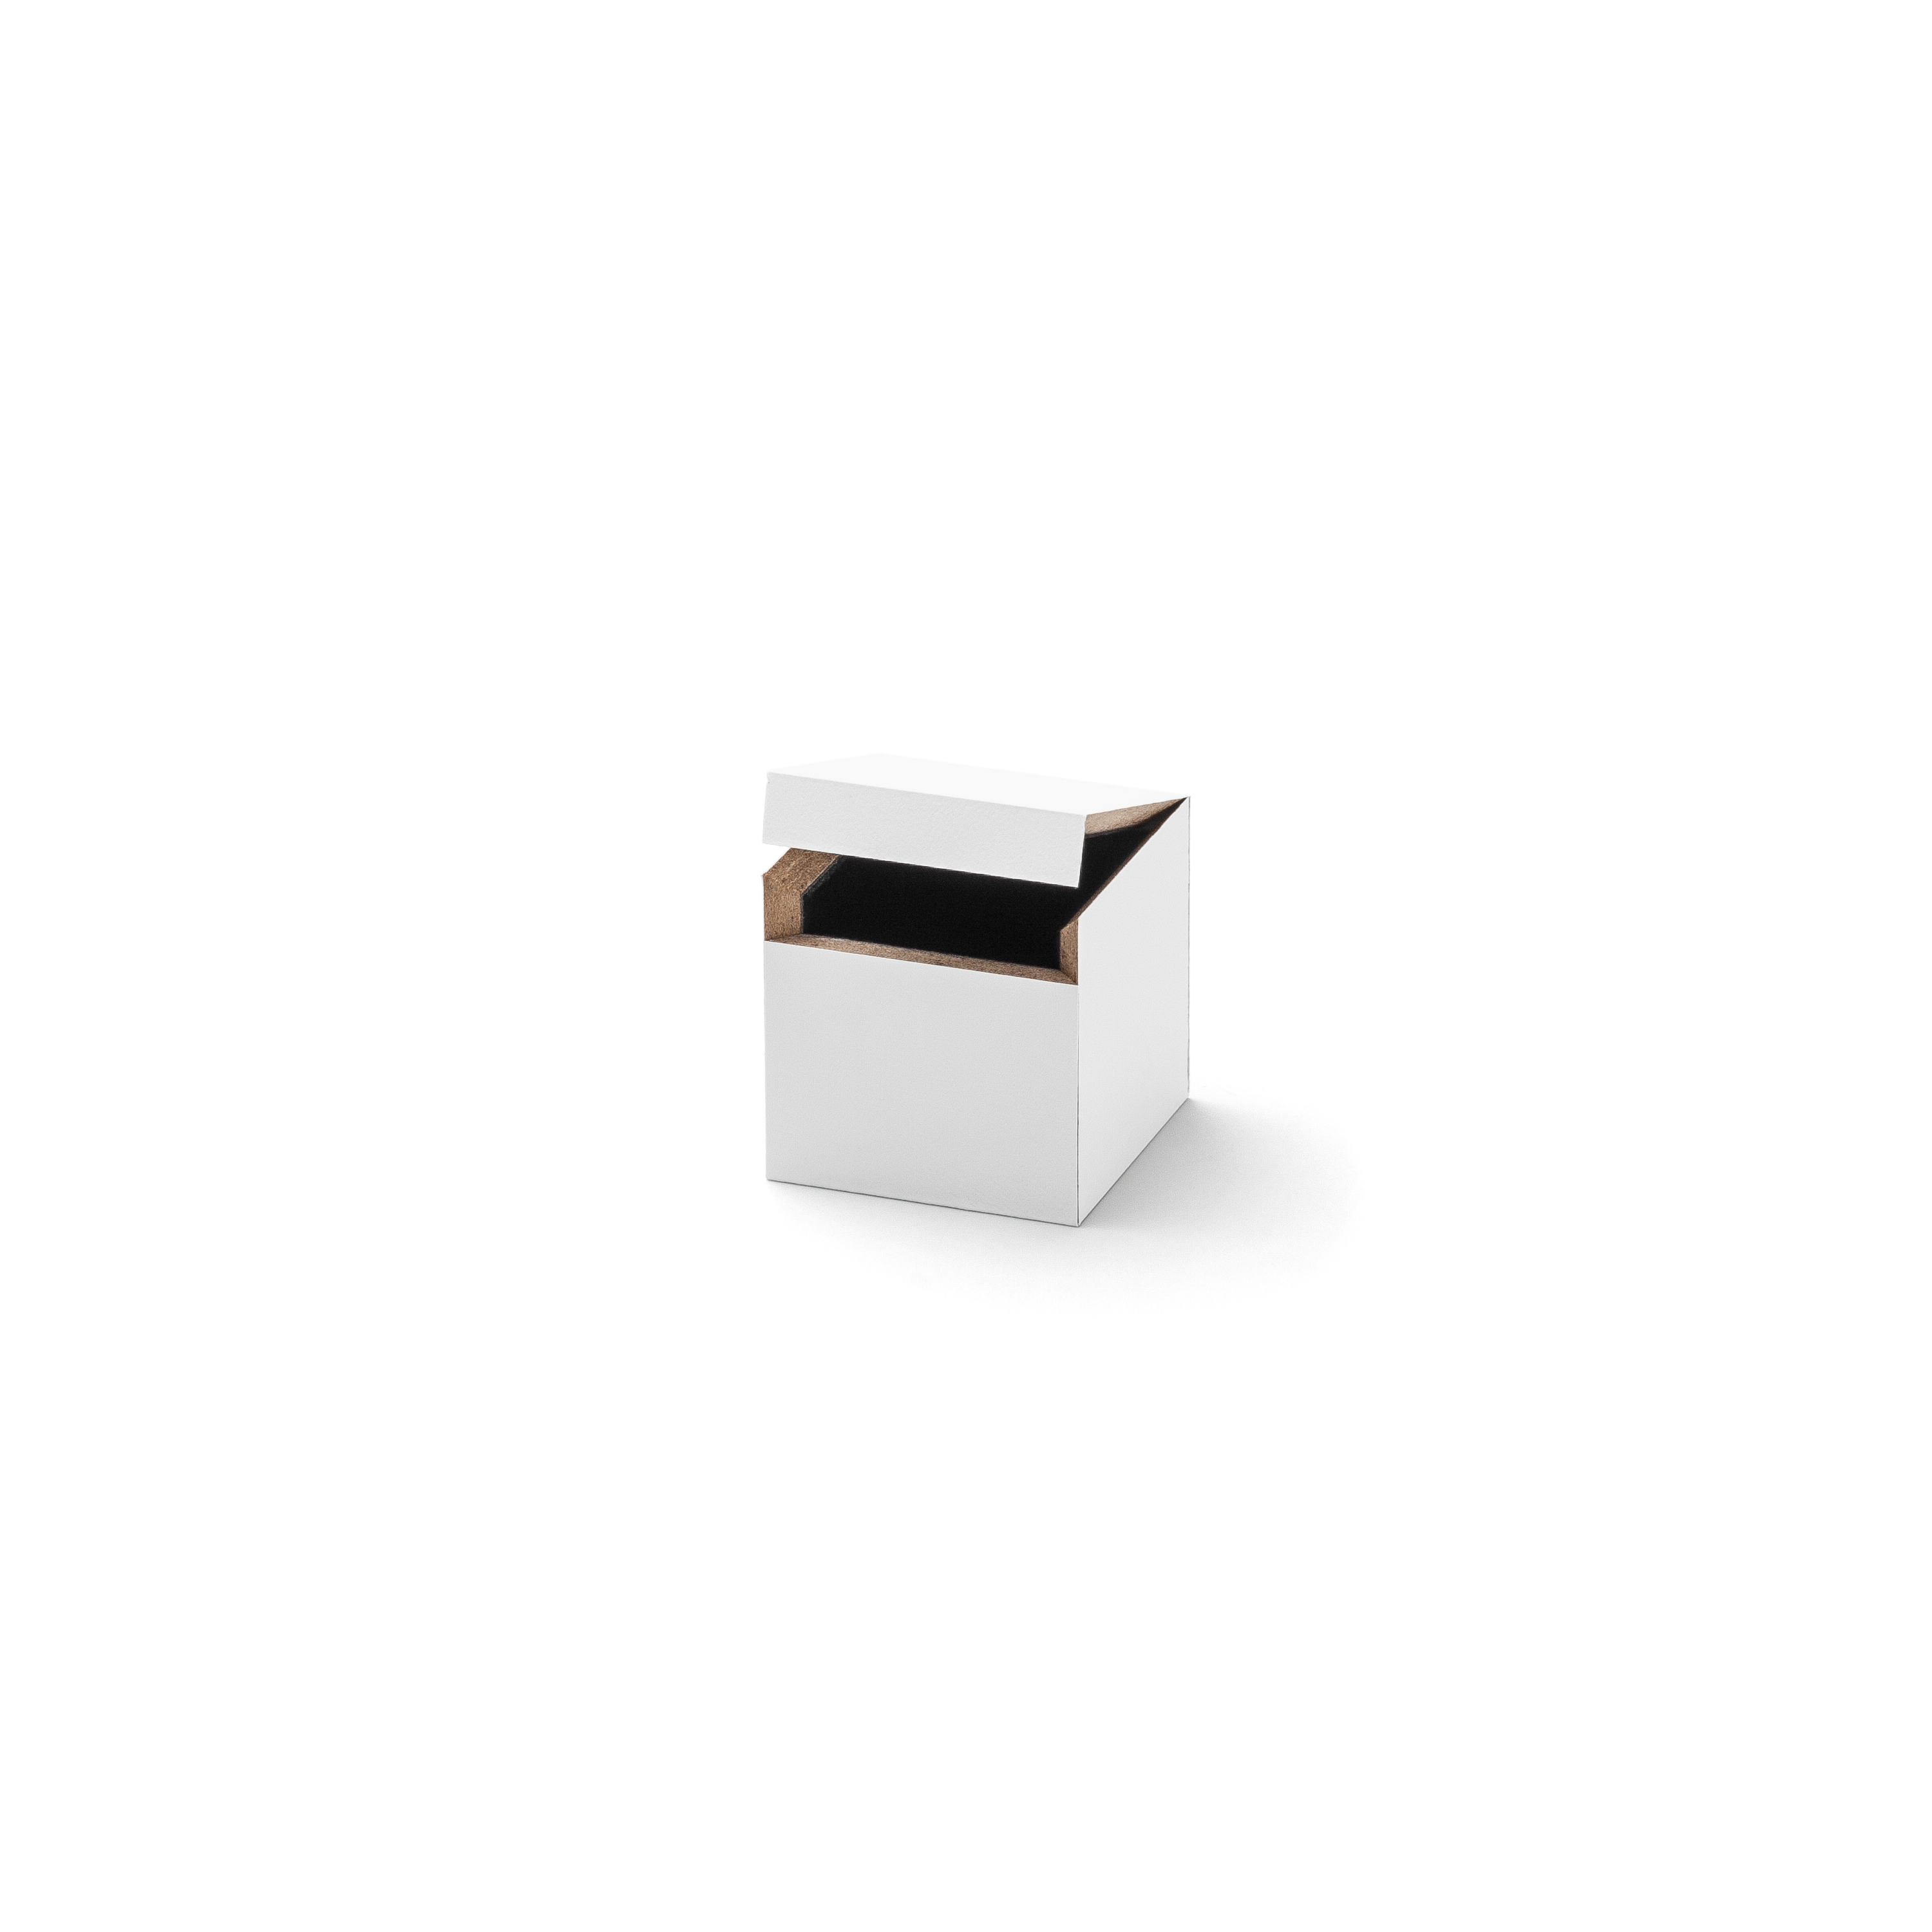 Whitebox Ring klein, 37 x 37 x 37 mm